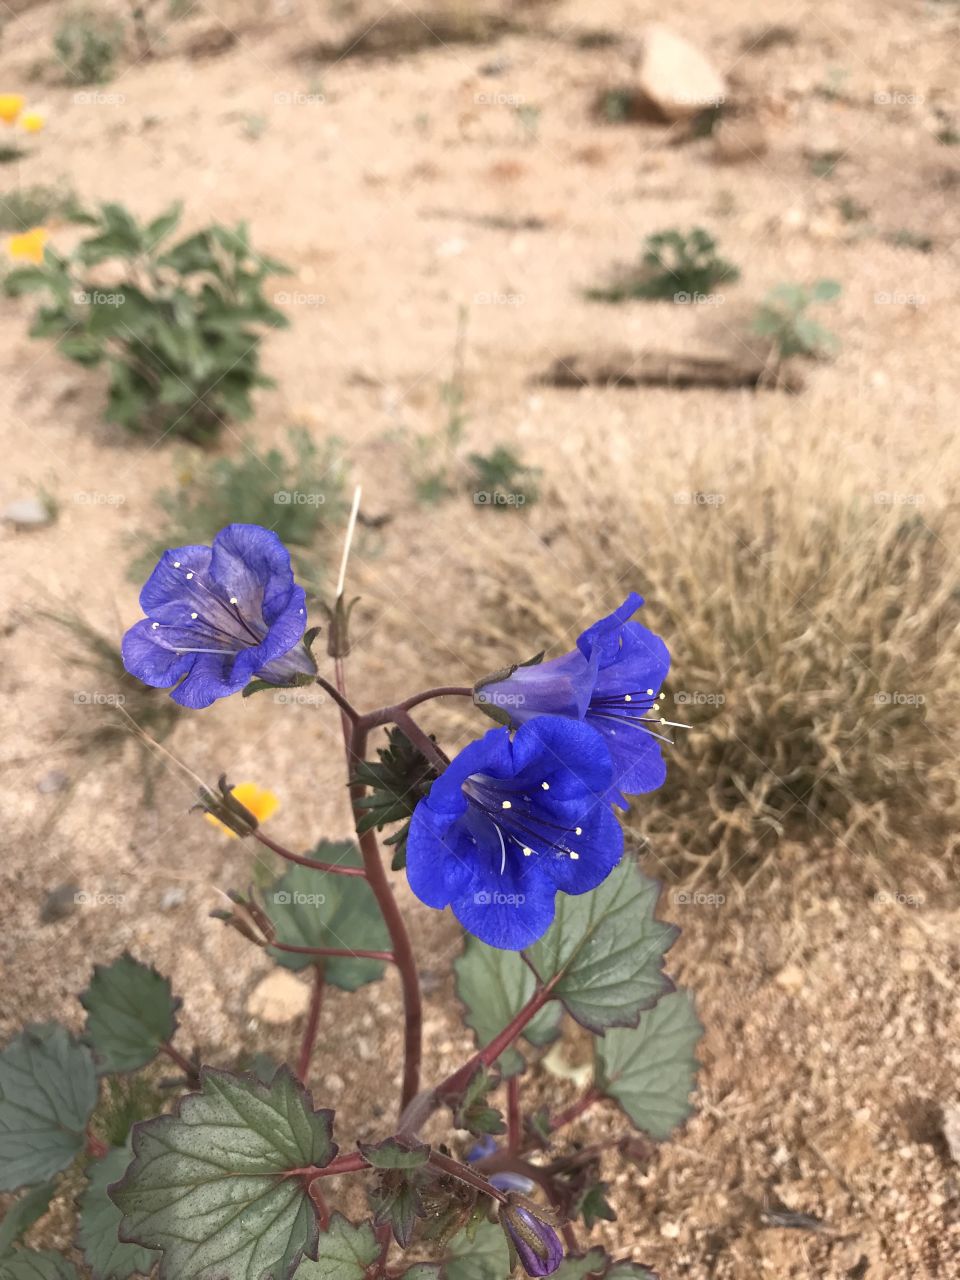 Arizona desert wild flowers 